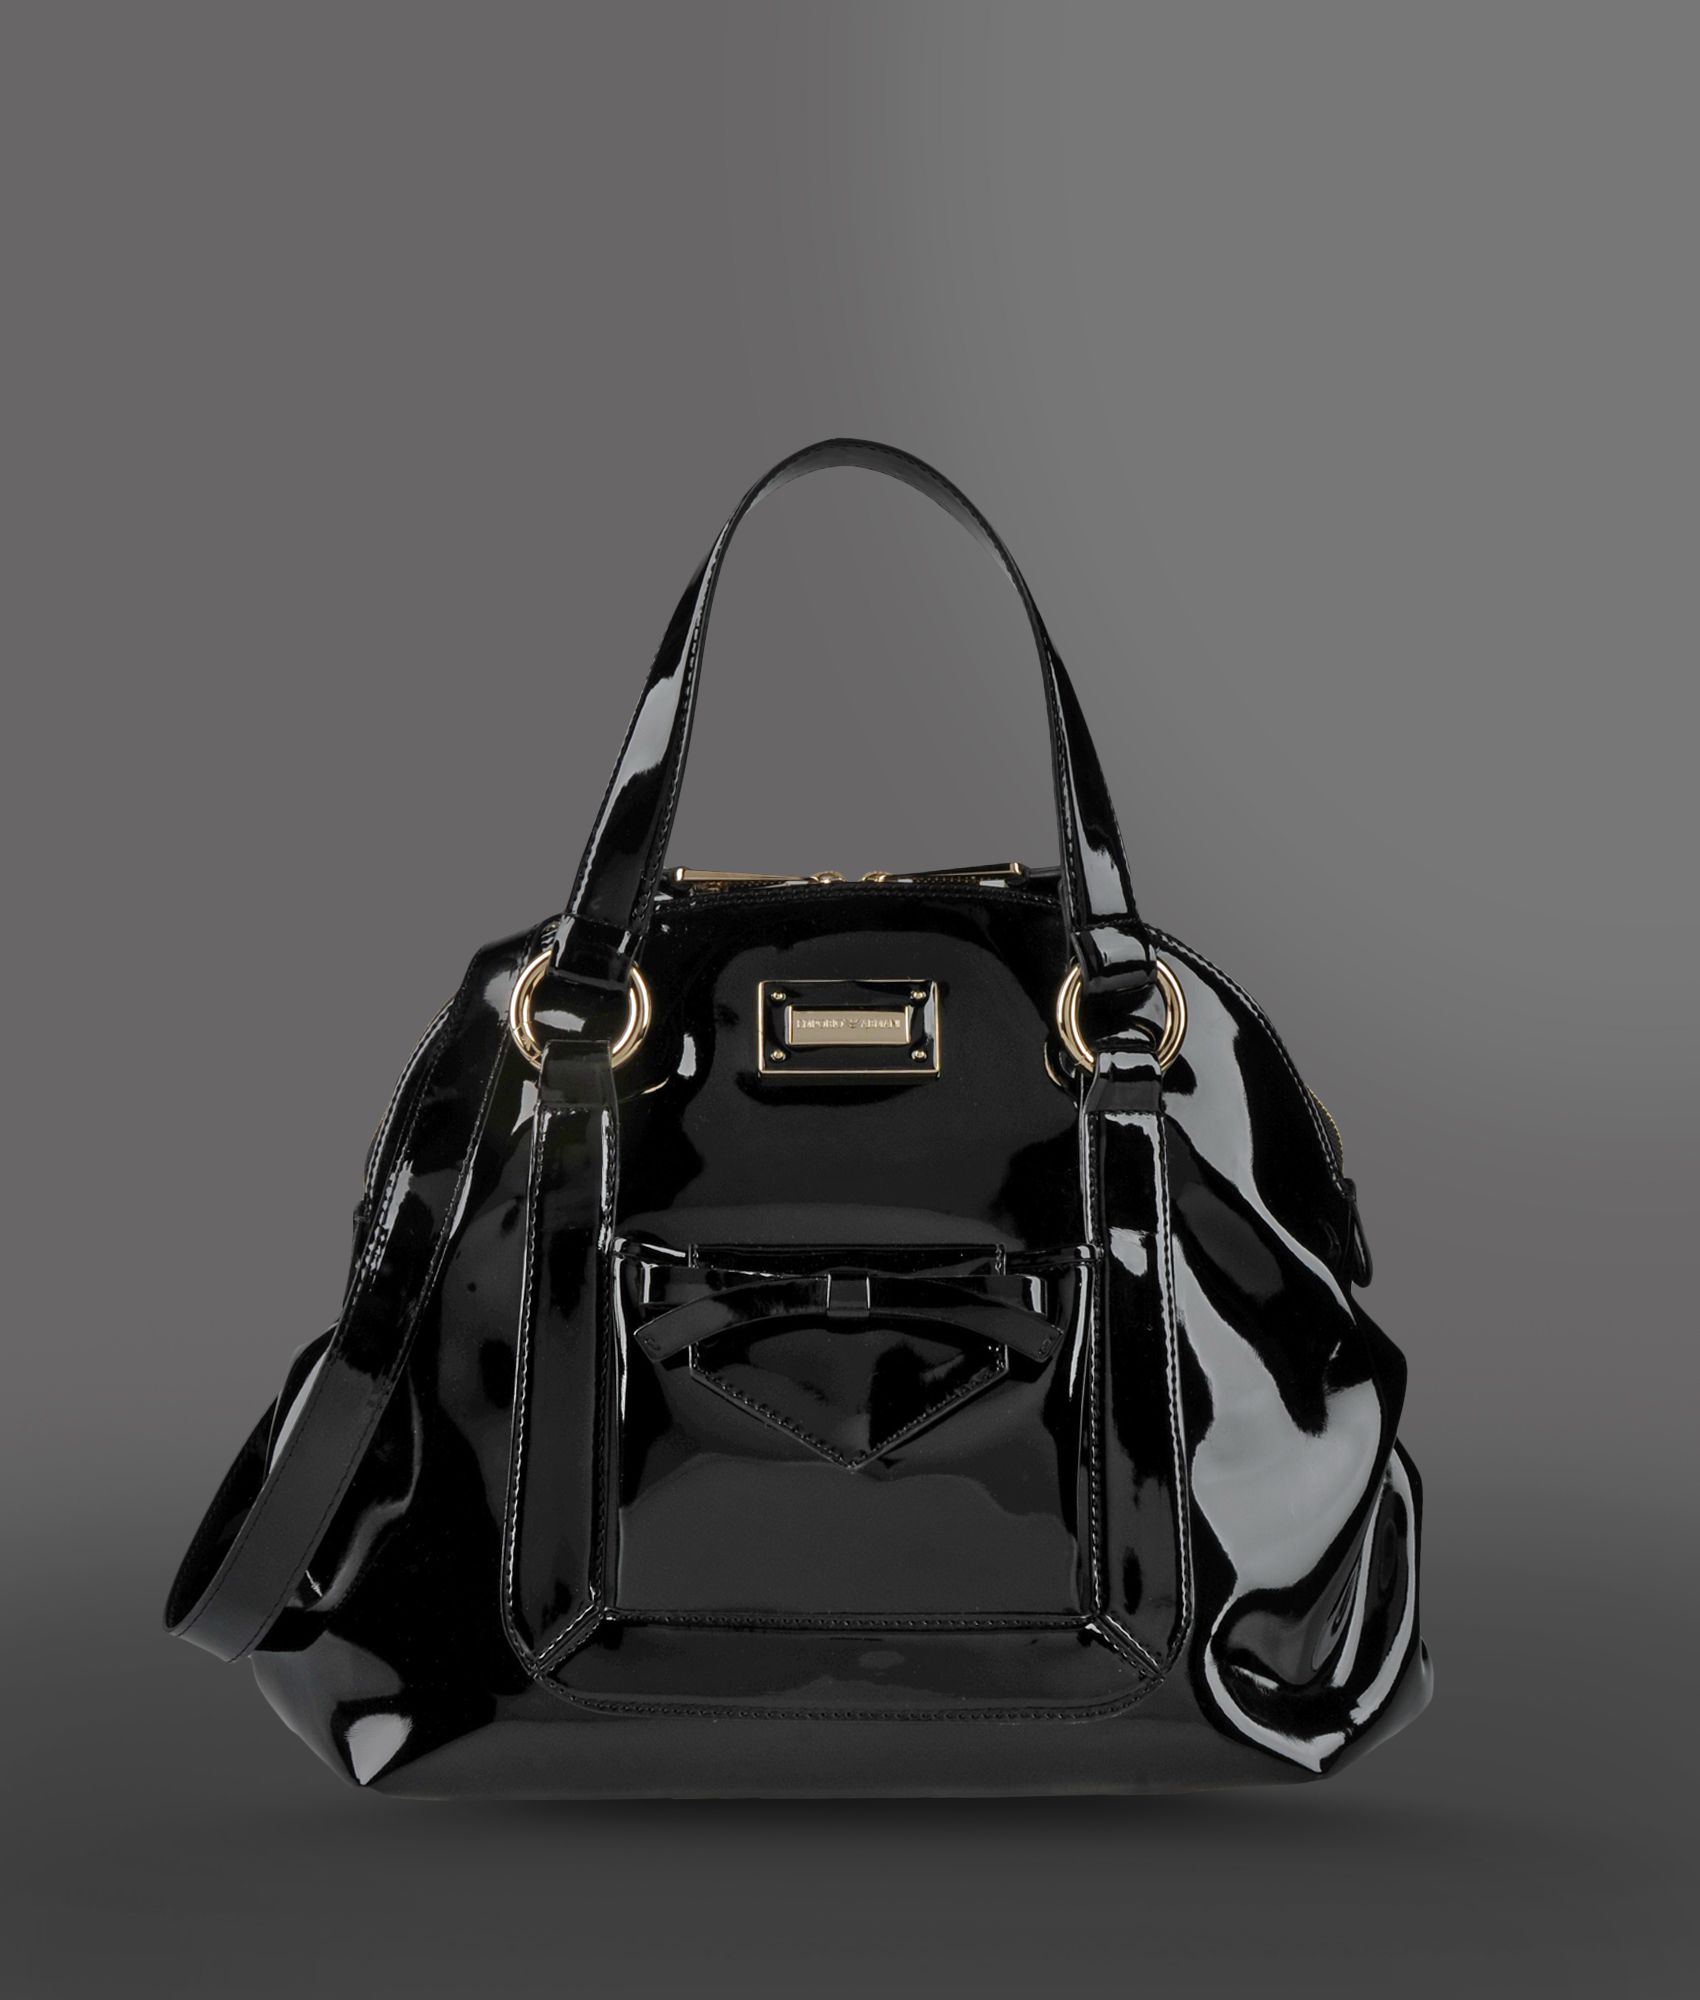 Emporio Armani Handbag with Zipper and Detachable Shoulder Strap in ...